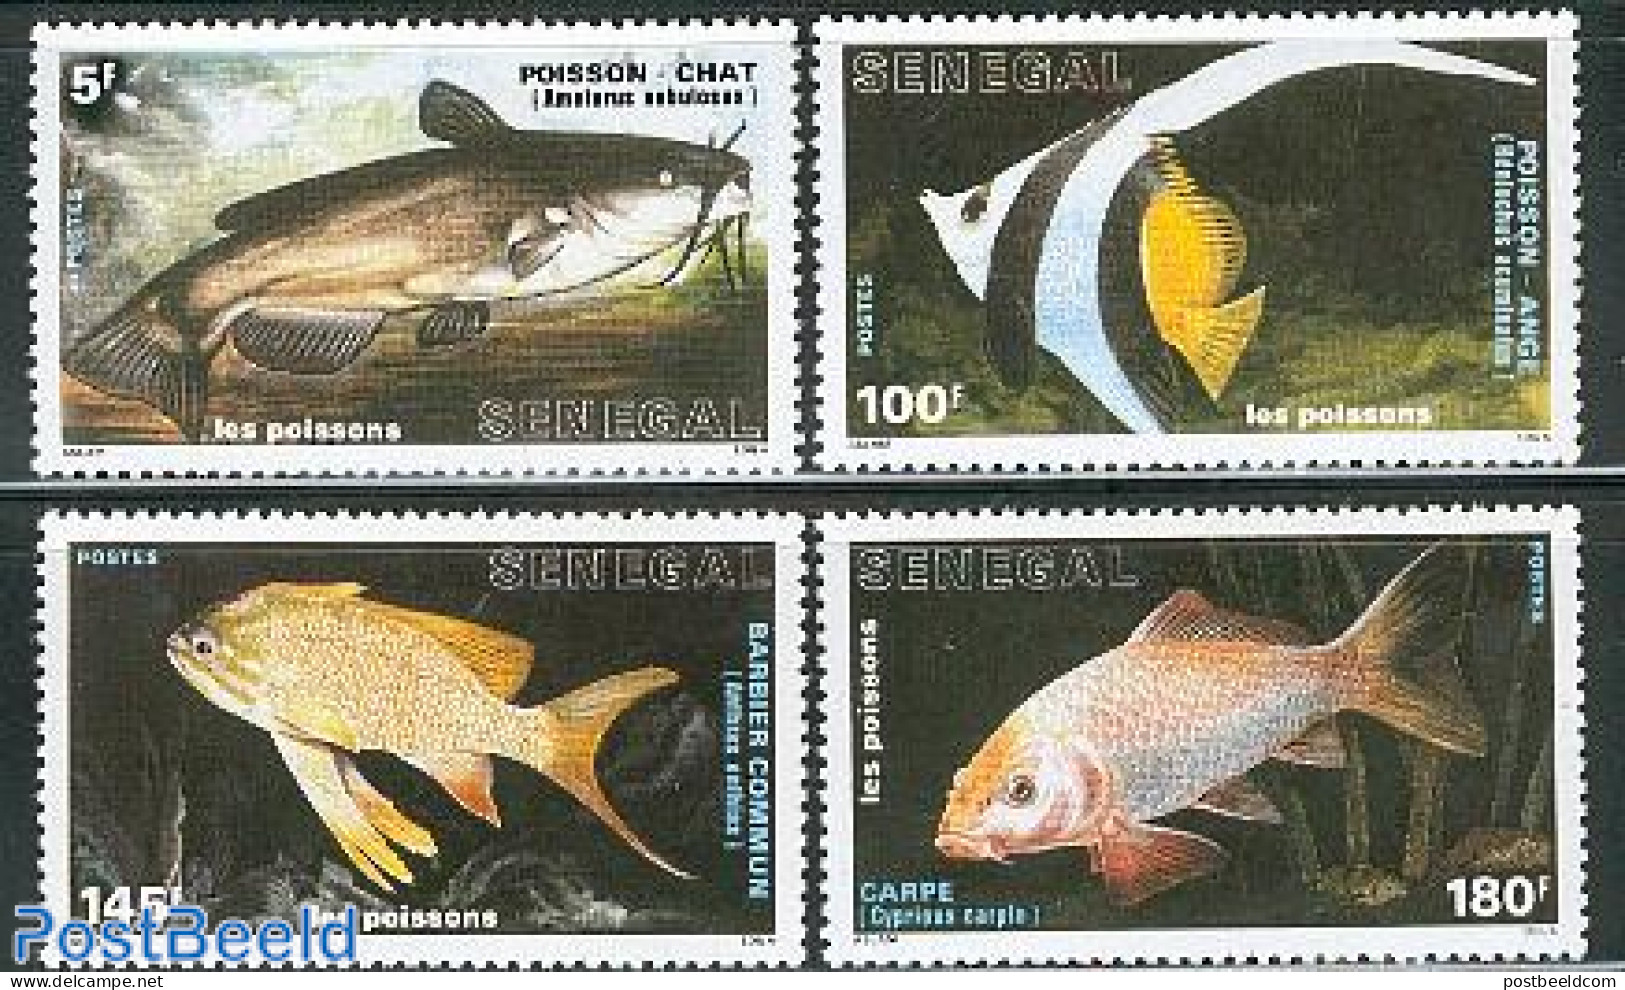 Senegal 1988 Fish 4v, Mint NH, Nature - Fish - Peces